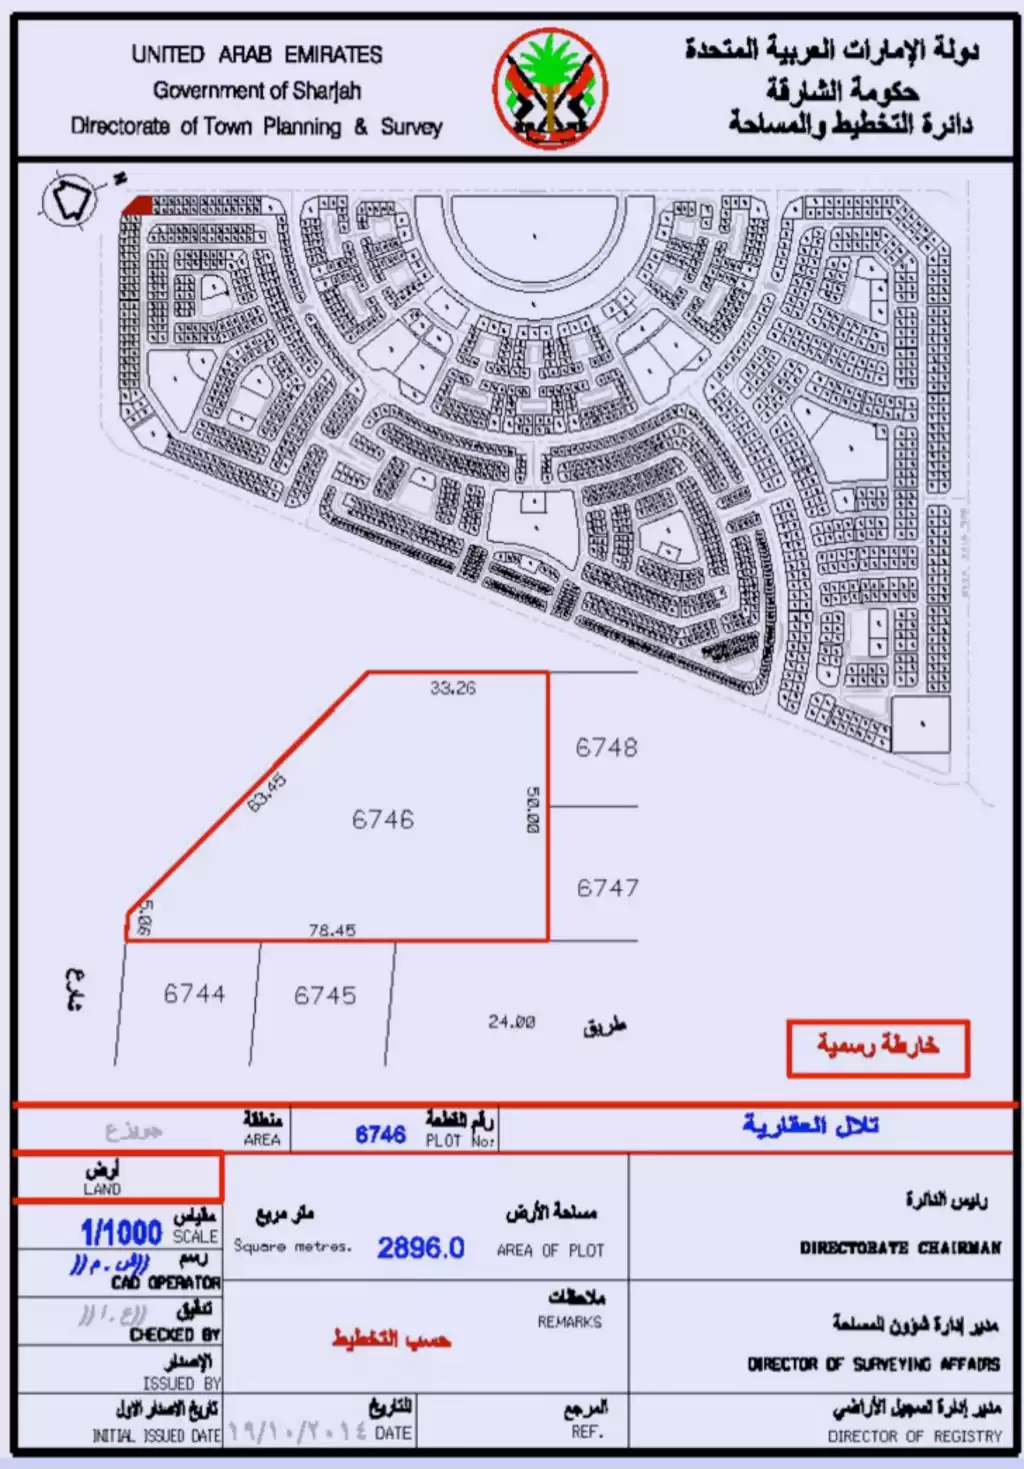 土地 计划外 混合用途土地  出售 在 阿尔塞尤 , 沙迦 #52623 - 1  image 